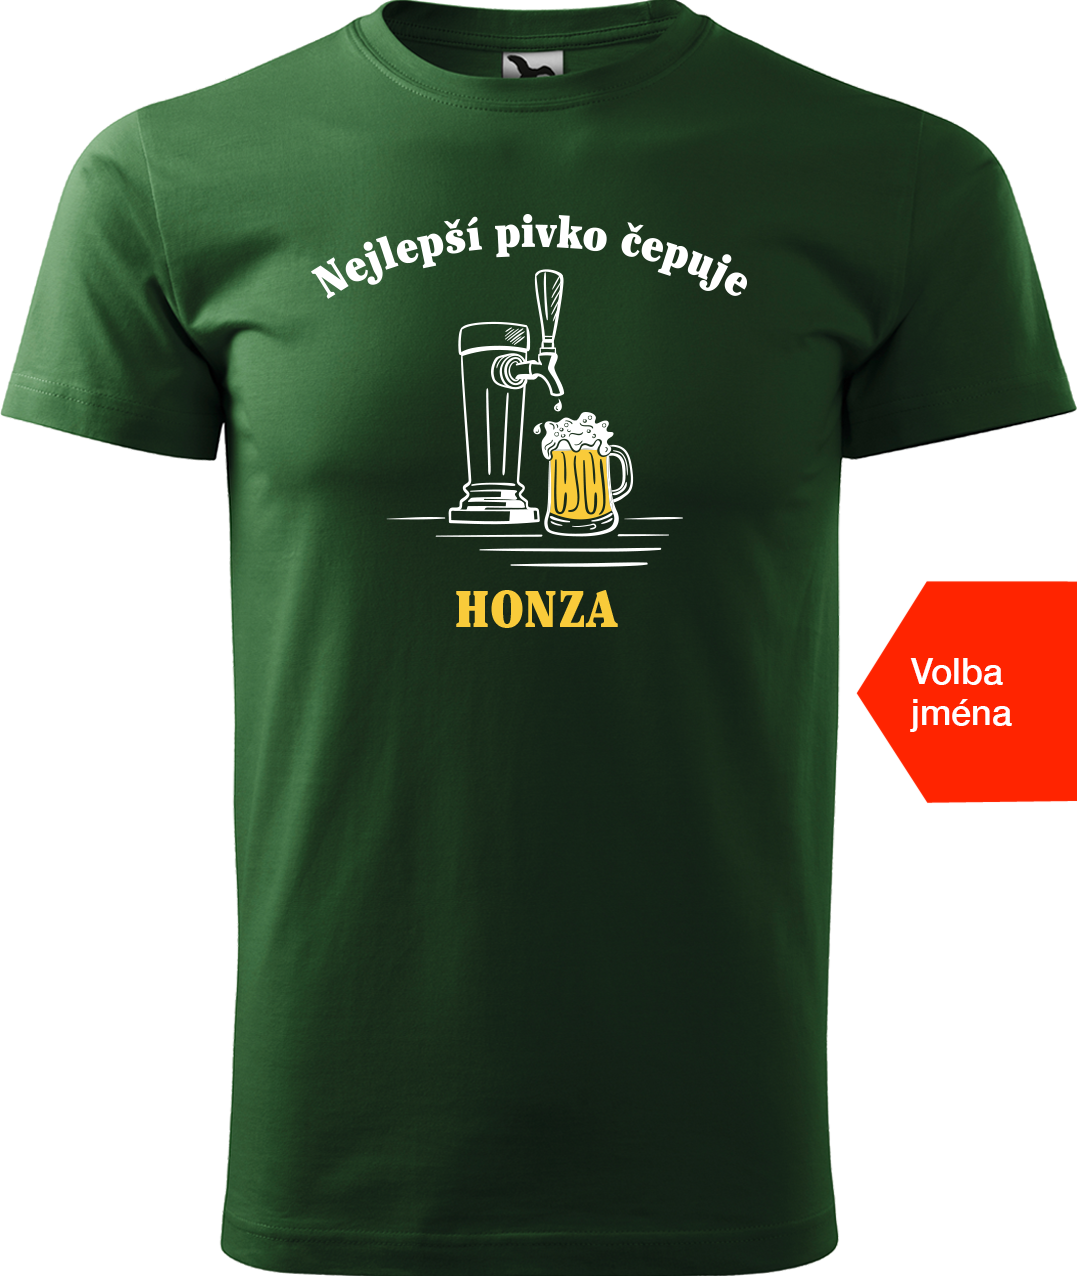 Pivní tričko - Nejlepší pivko čepuje + jméno Velikost: 3XL, Barva: Lahvově zelená (06)